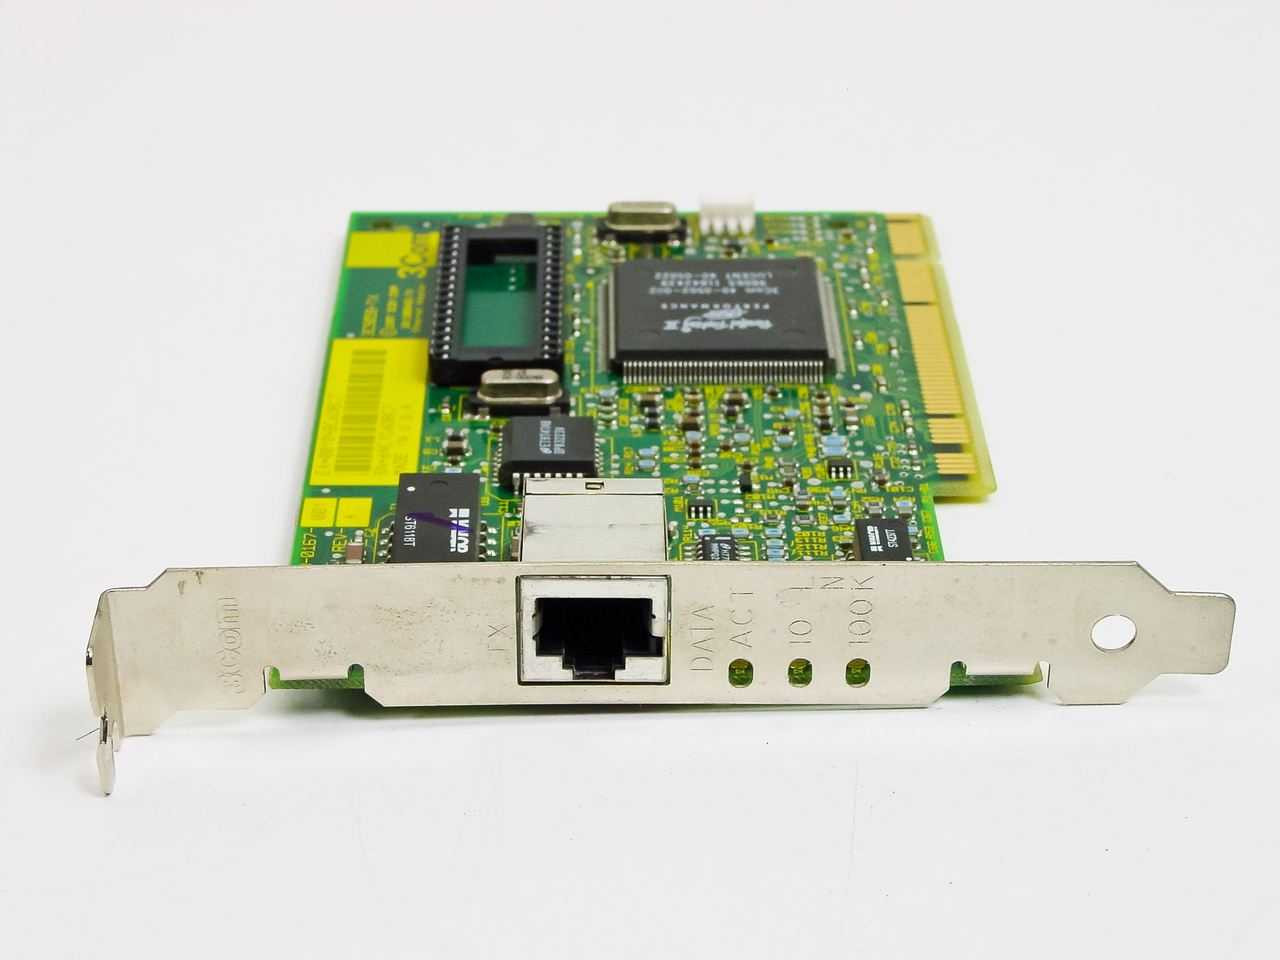 3Com 3C905B-TX Fast EtherLink XL PCI 10/100 Network Card 03-0167-001